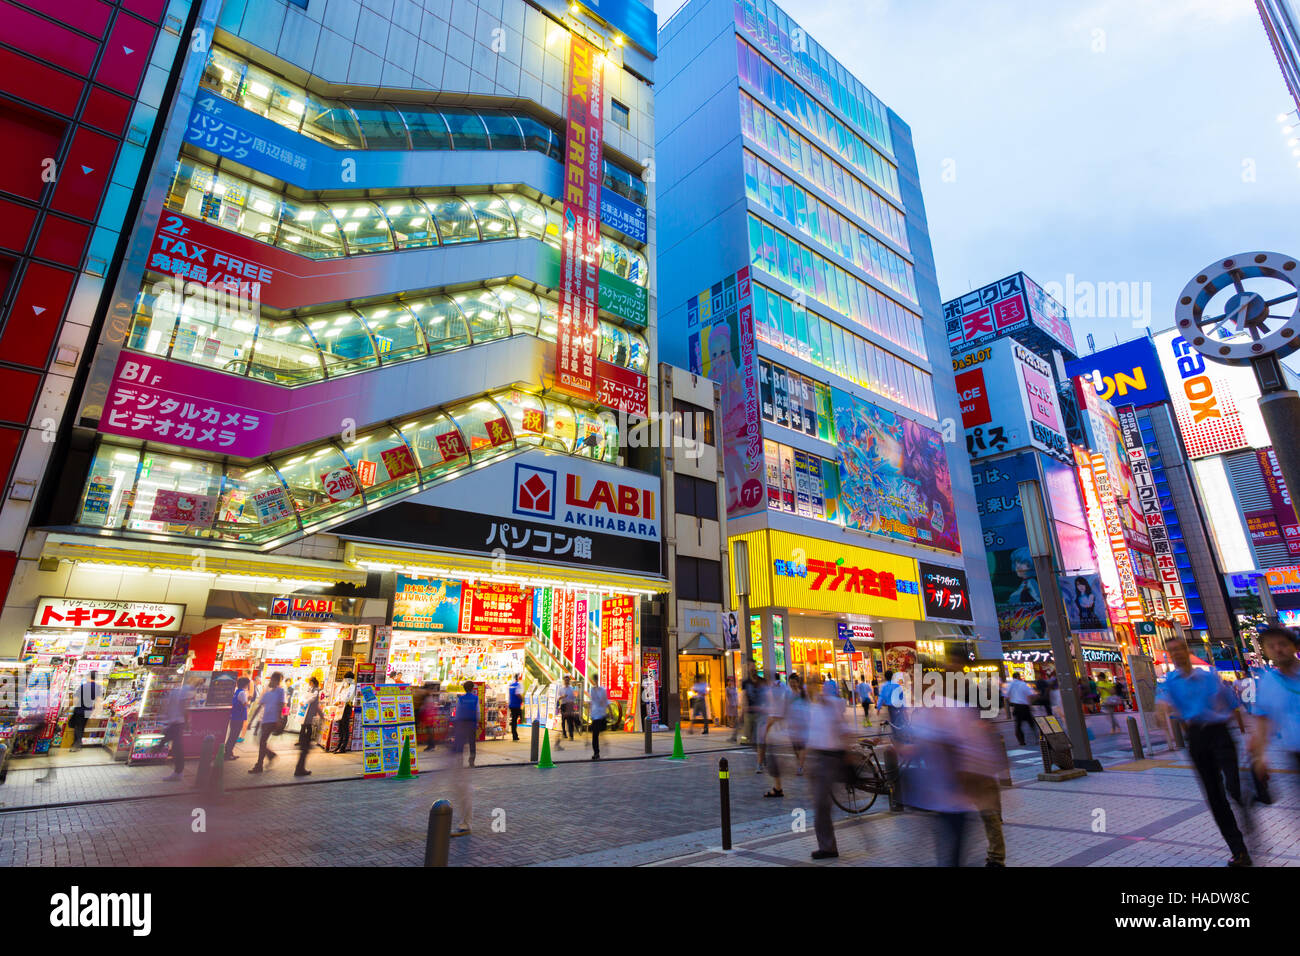 La folla della vivace città di gente che cammina intorno al mozzo di elettronica quartiere di Akihabara tra luci brillanti e memorizzare i segni, advertis Foto Stock